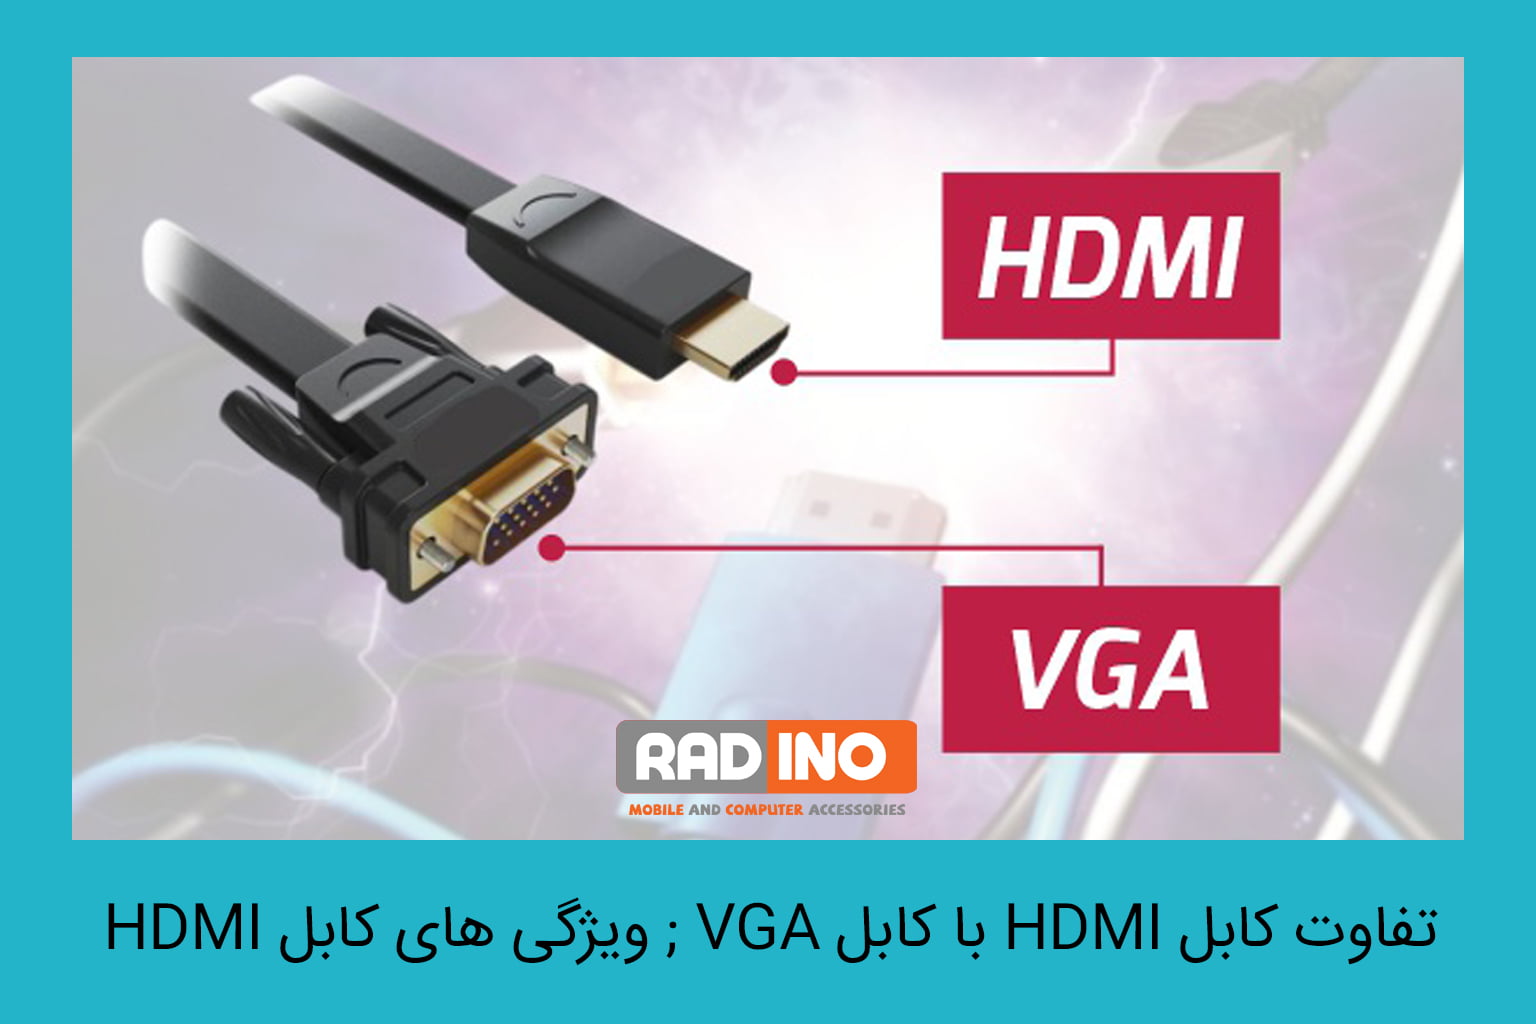 تفاوت کابل HDMI با کابل VGA